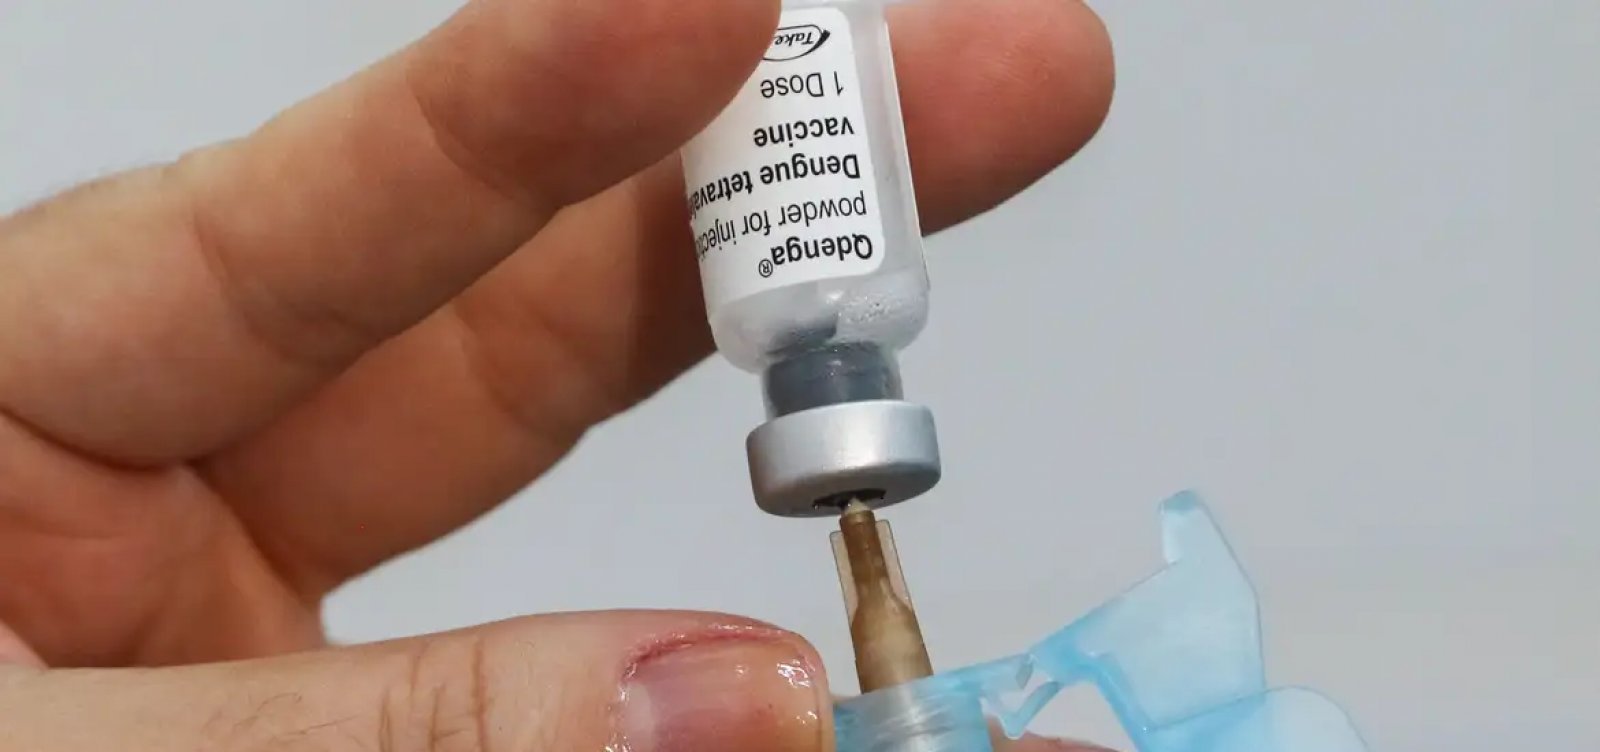 Salvador terá vacinação contra a dengue nesta segunda para zerar estoque